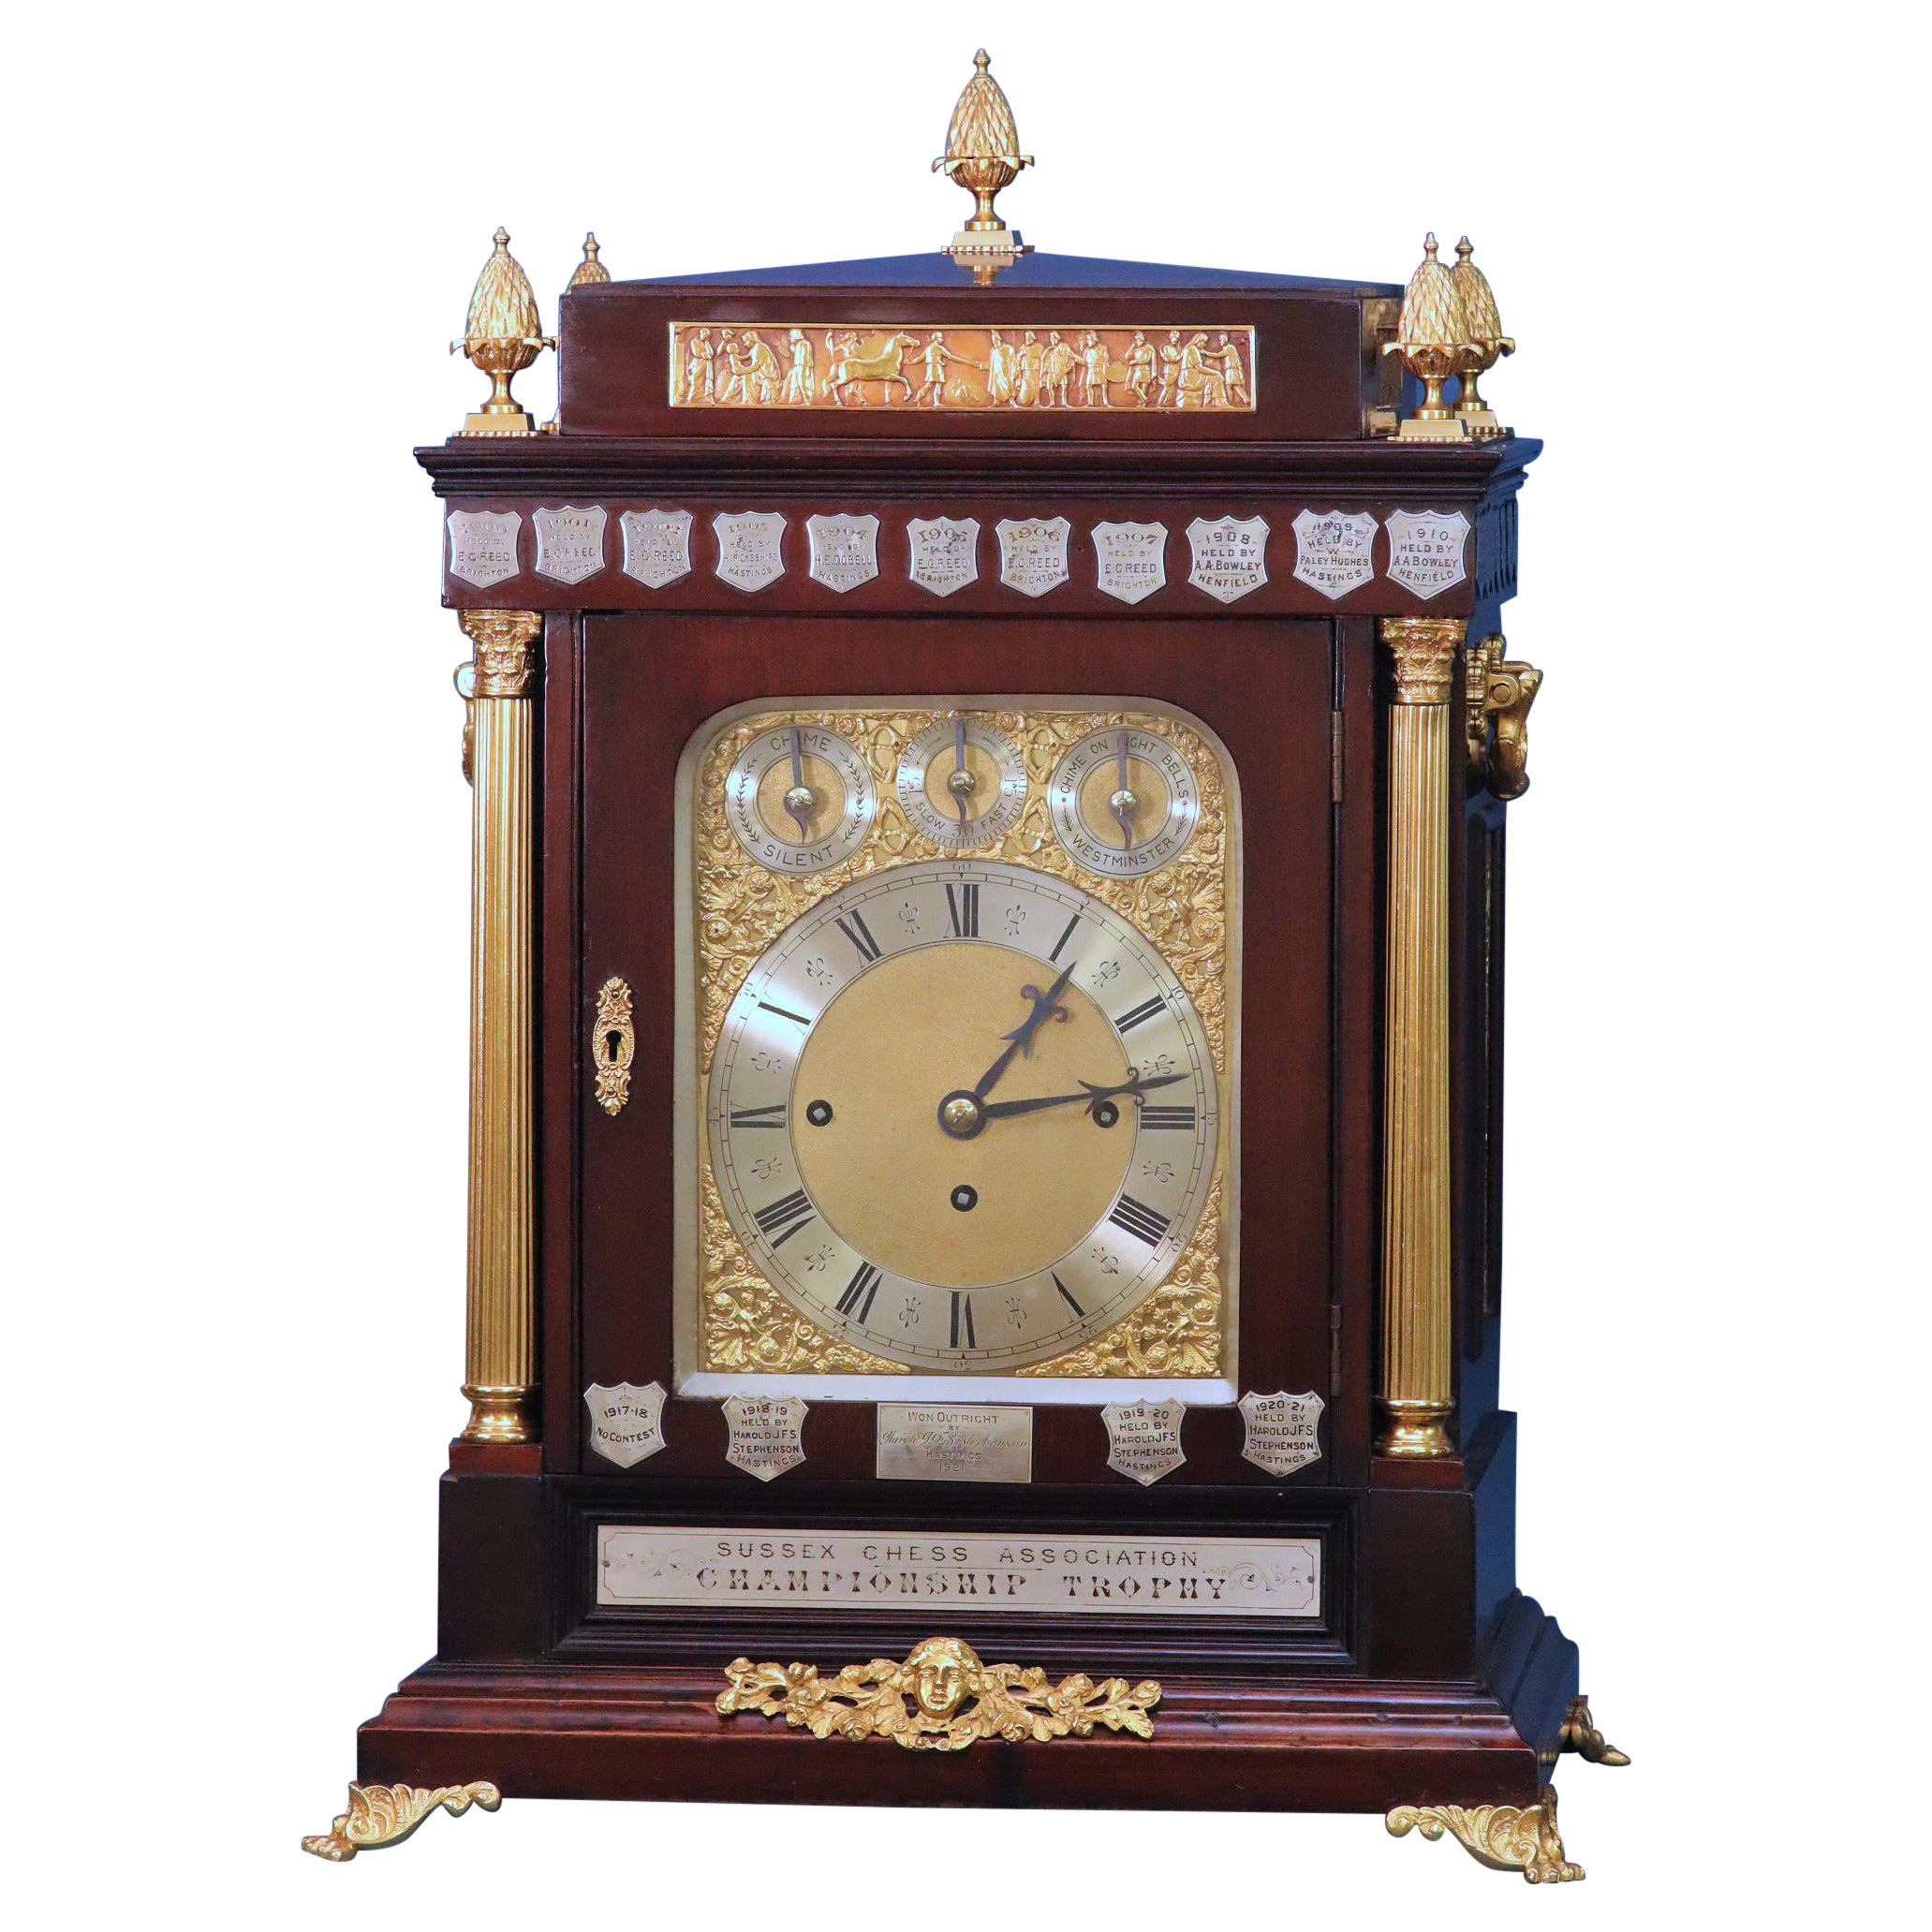 Seltene englische Schach-Trophäen-Uhr aus dem späten 19. Jahrhundert.